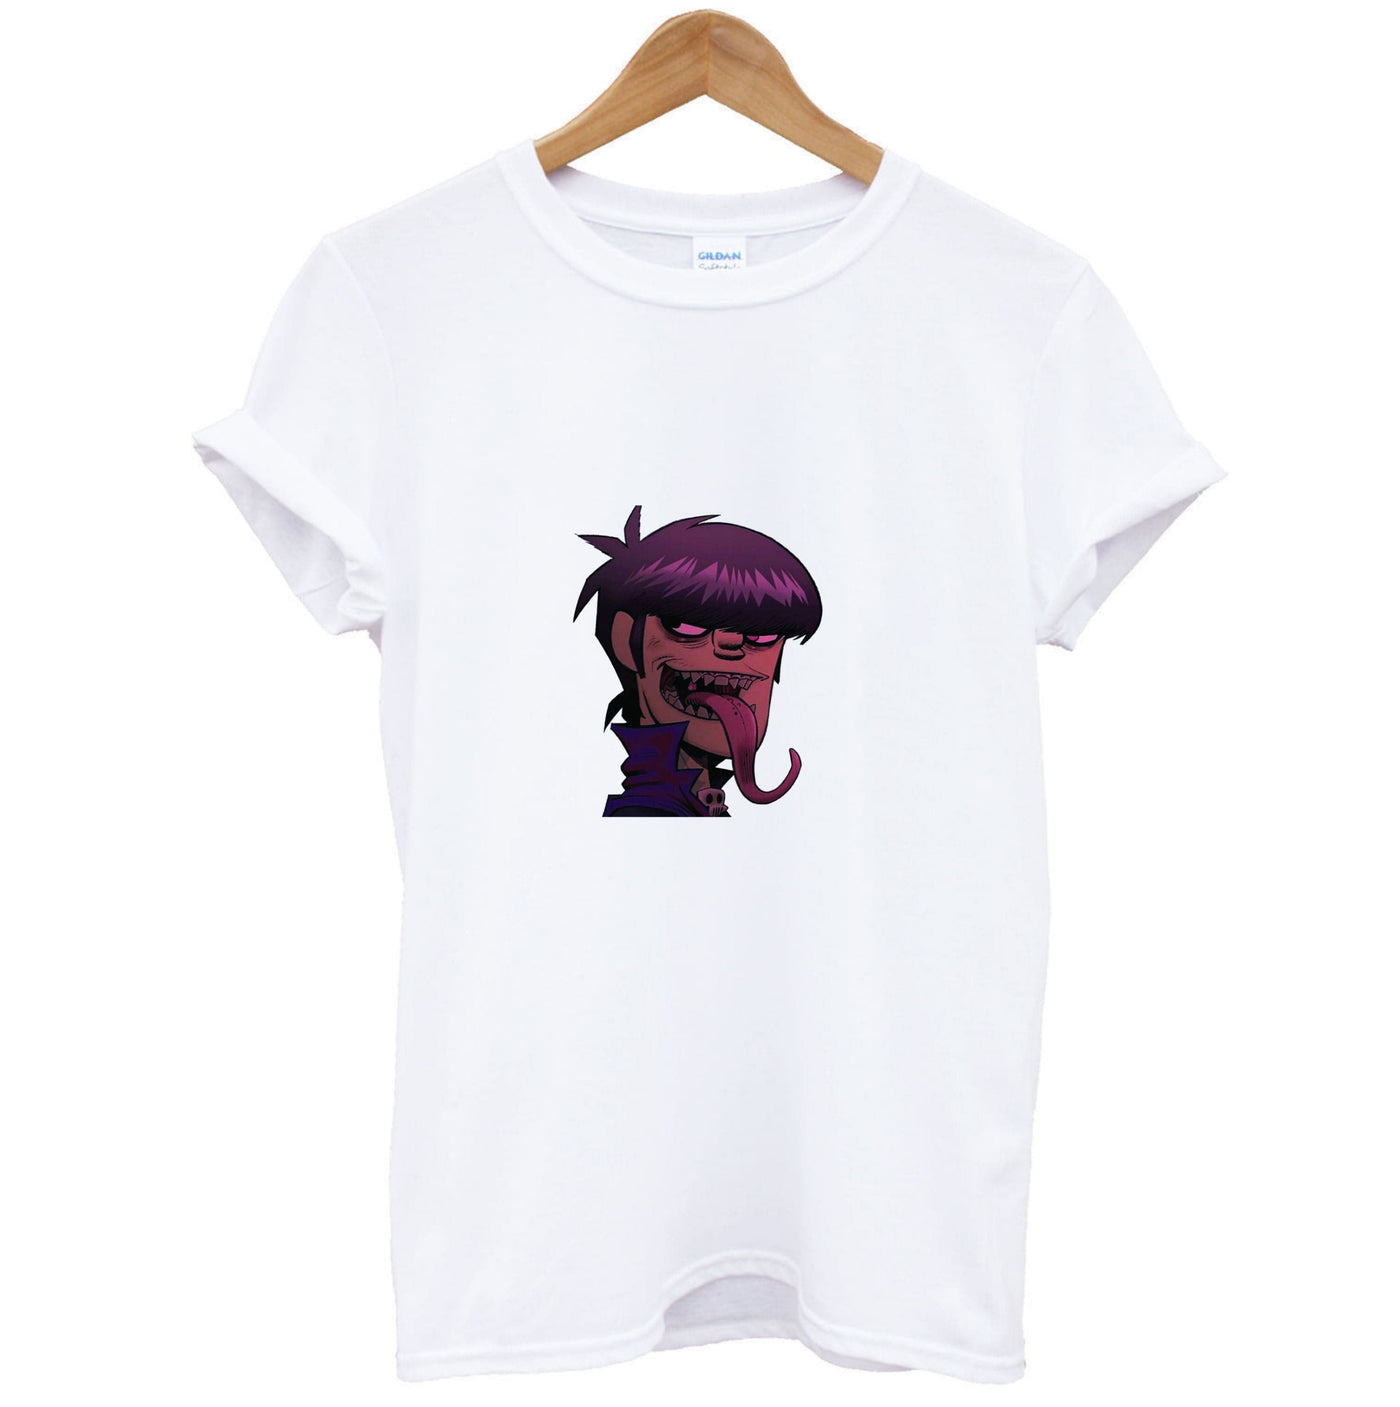 Member - Gorillaz T-Shirt